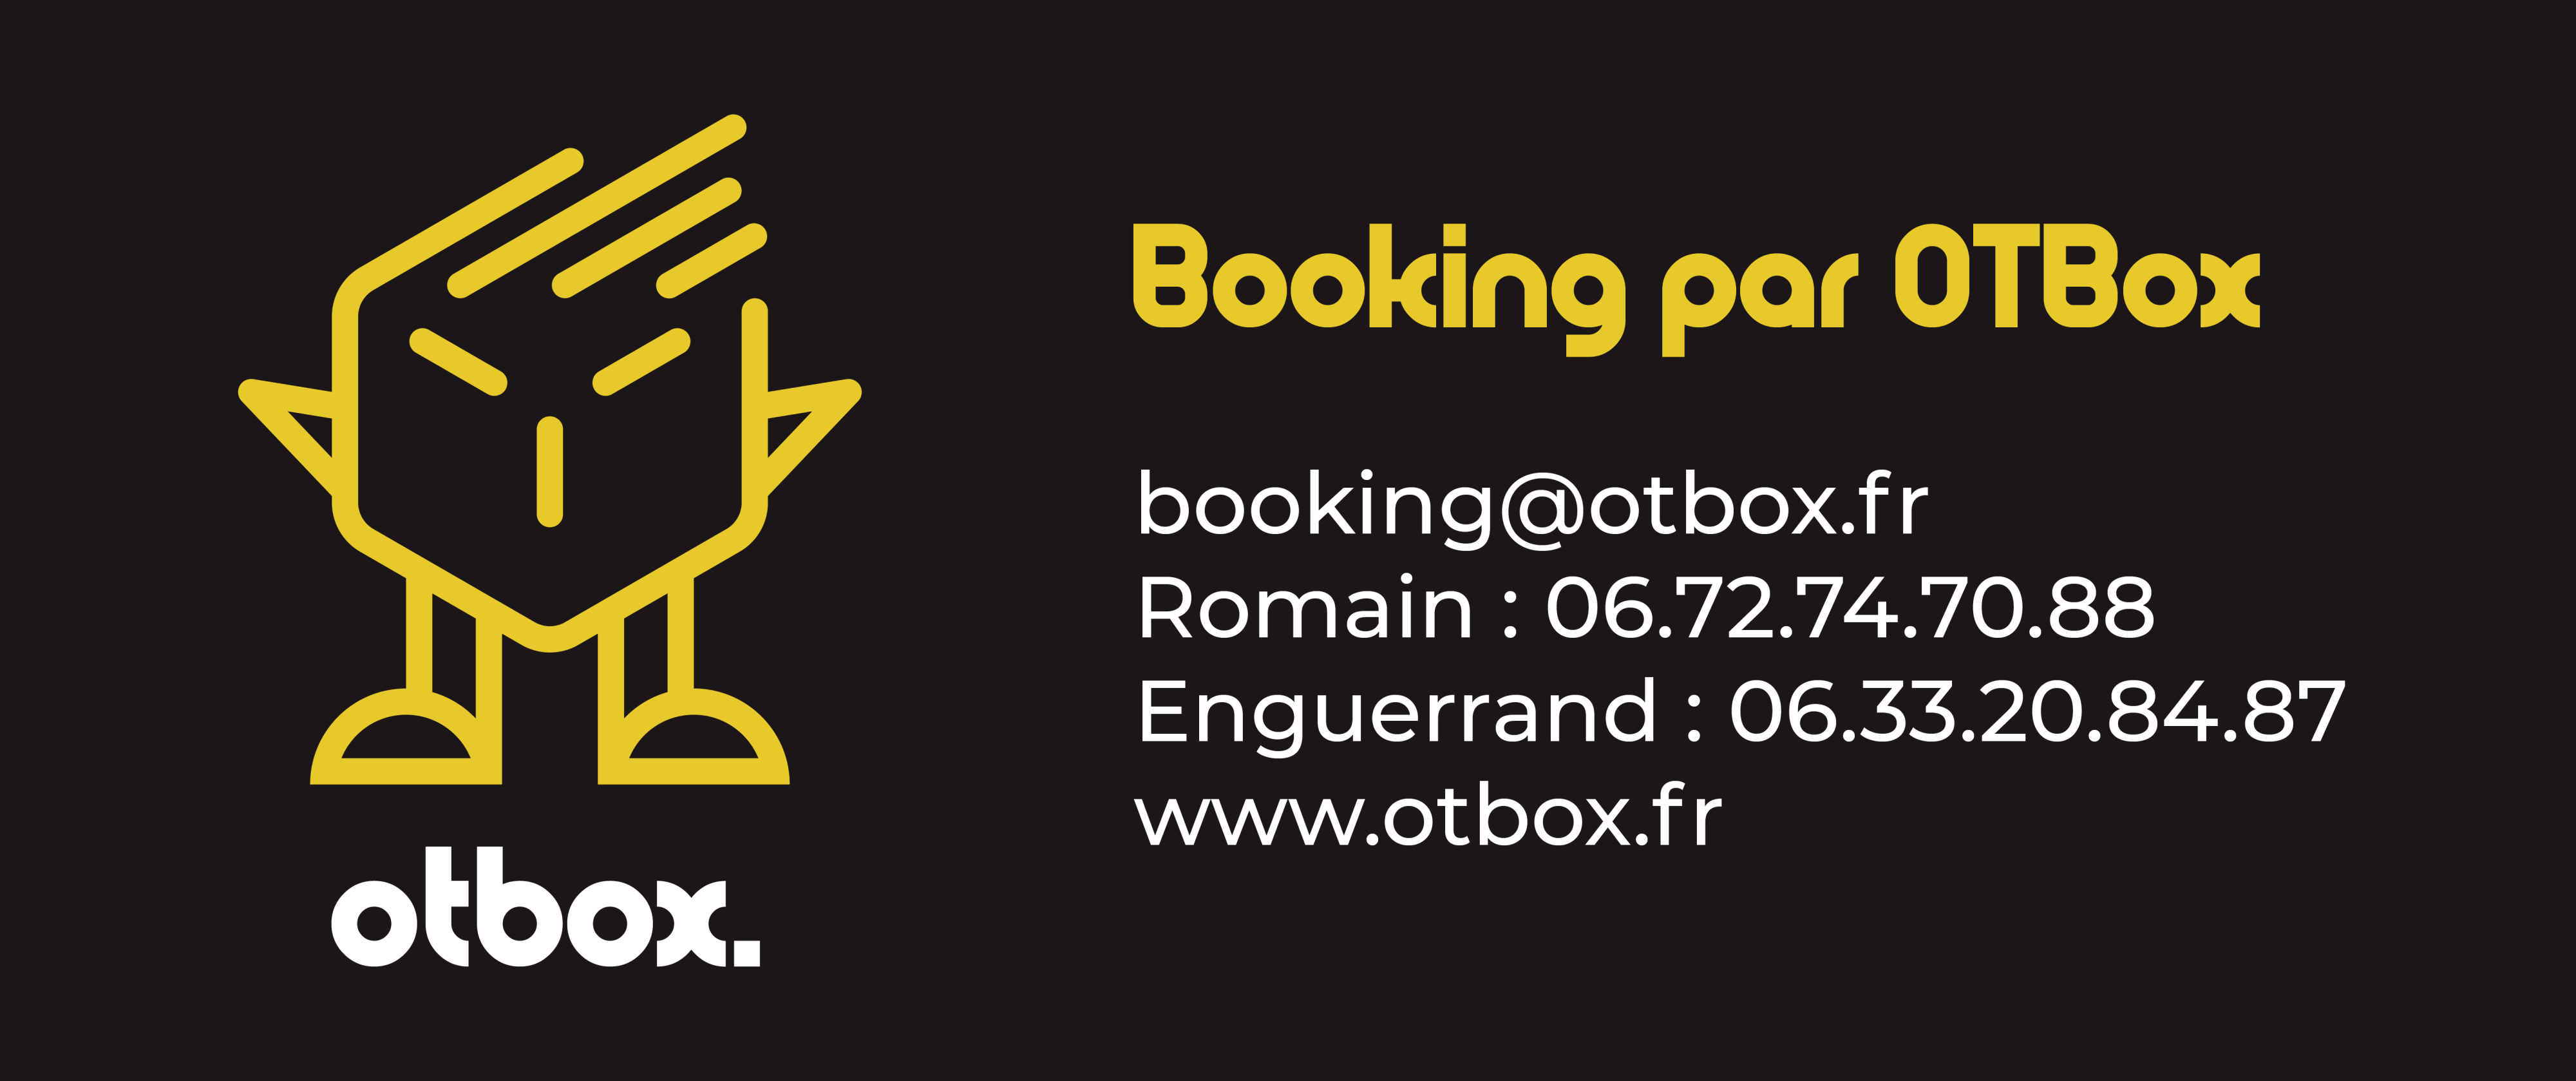 Agathe - Booking par OTBox